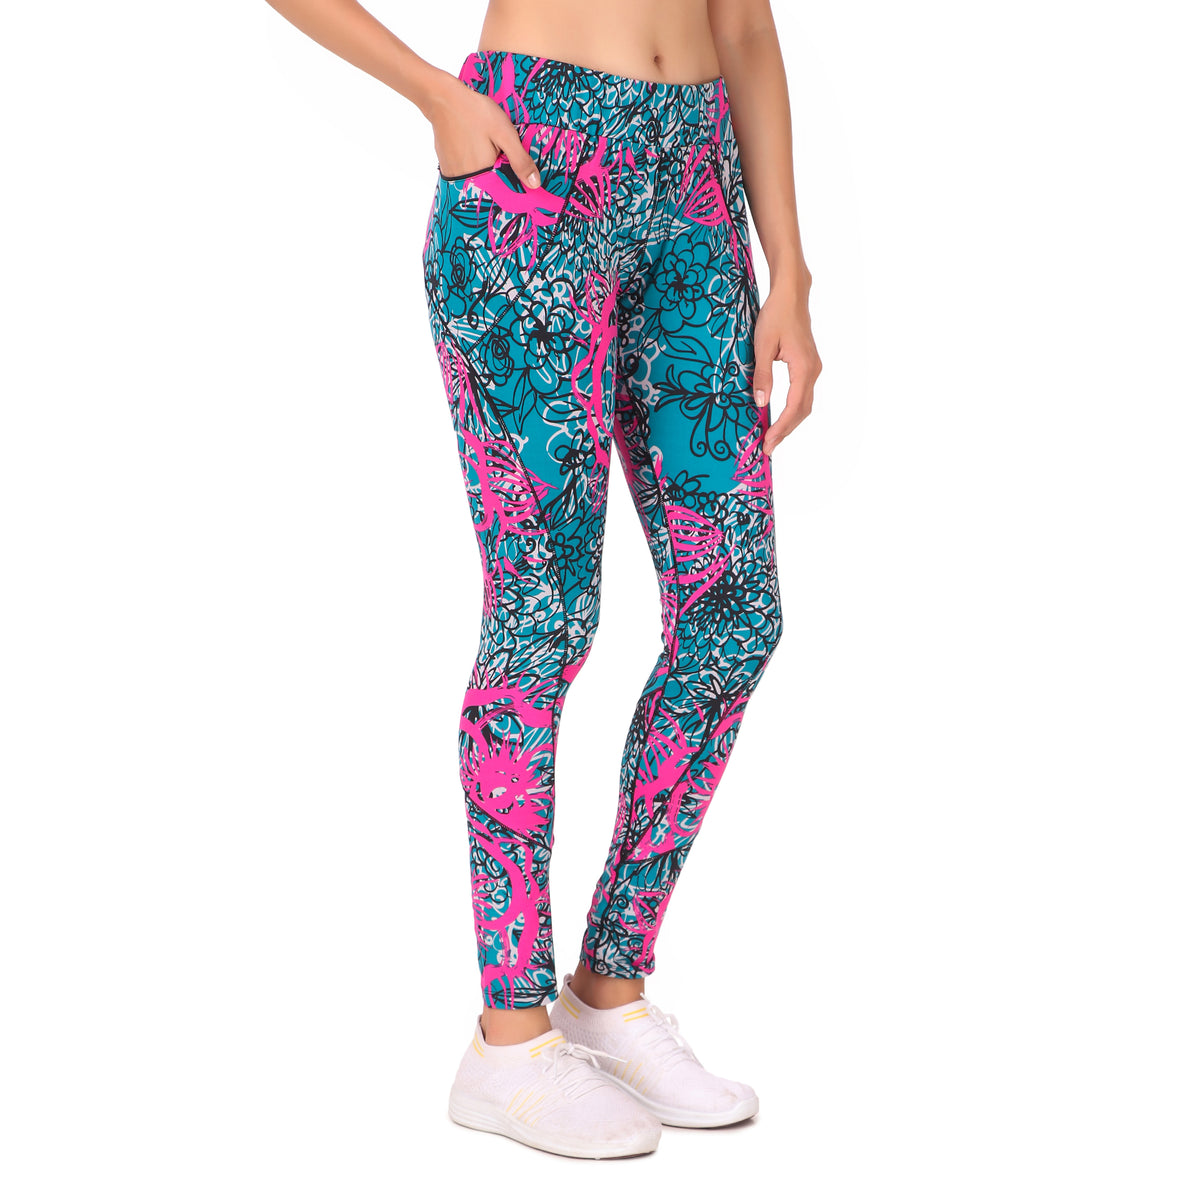 Gym Yoga Running Legging For Women Zip Pocket (Teal/pink)